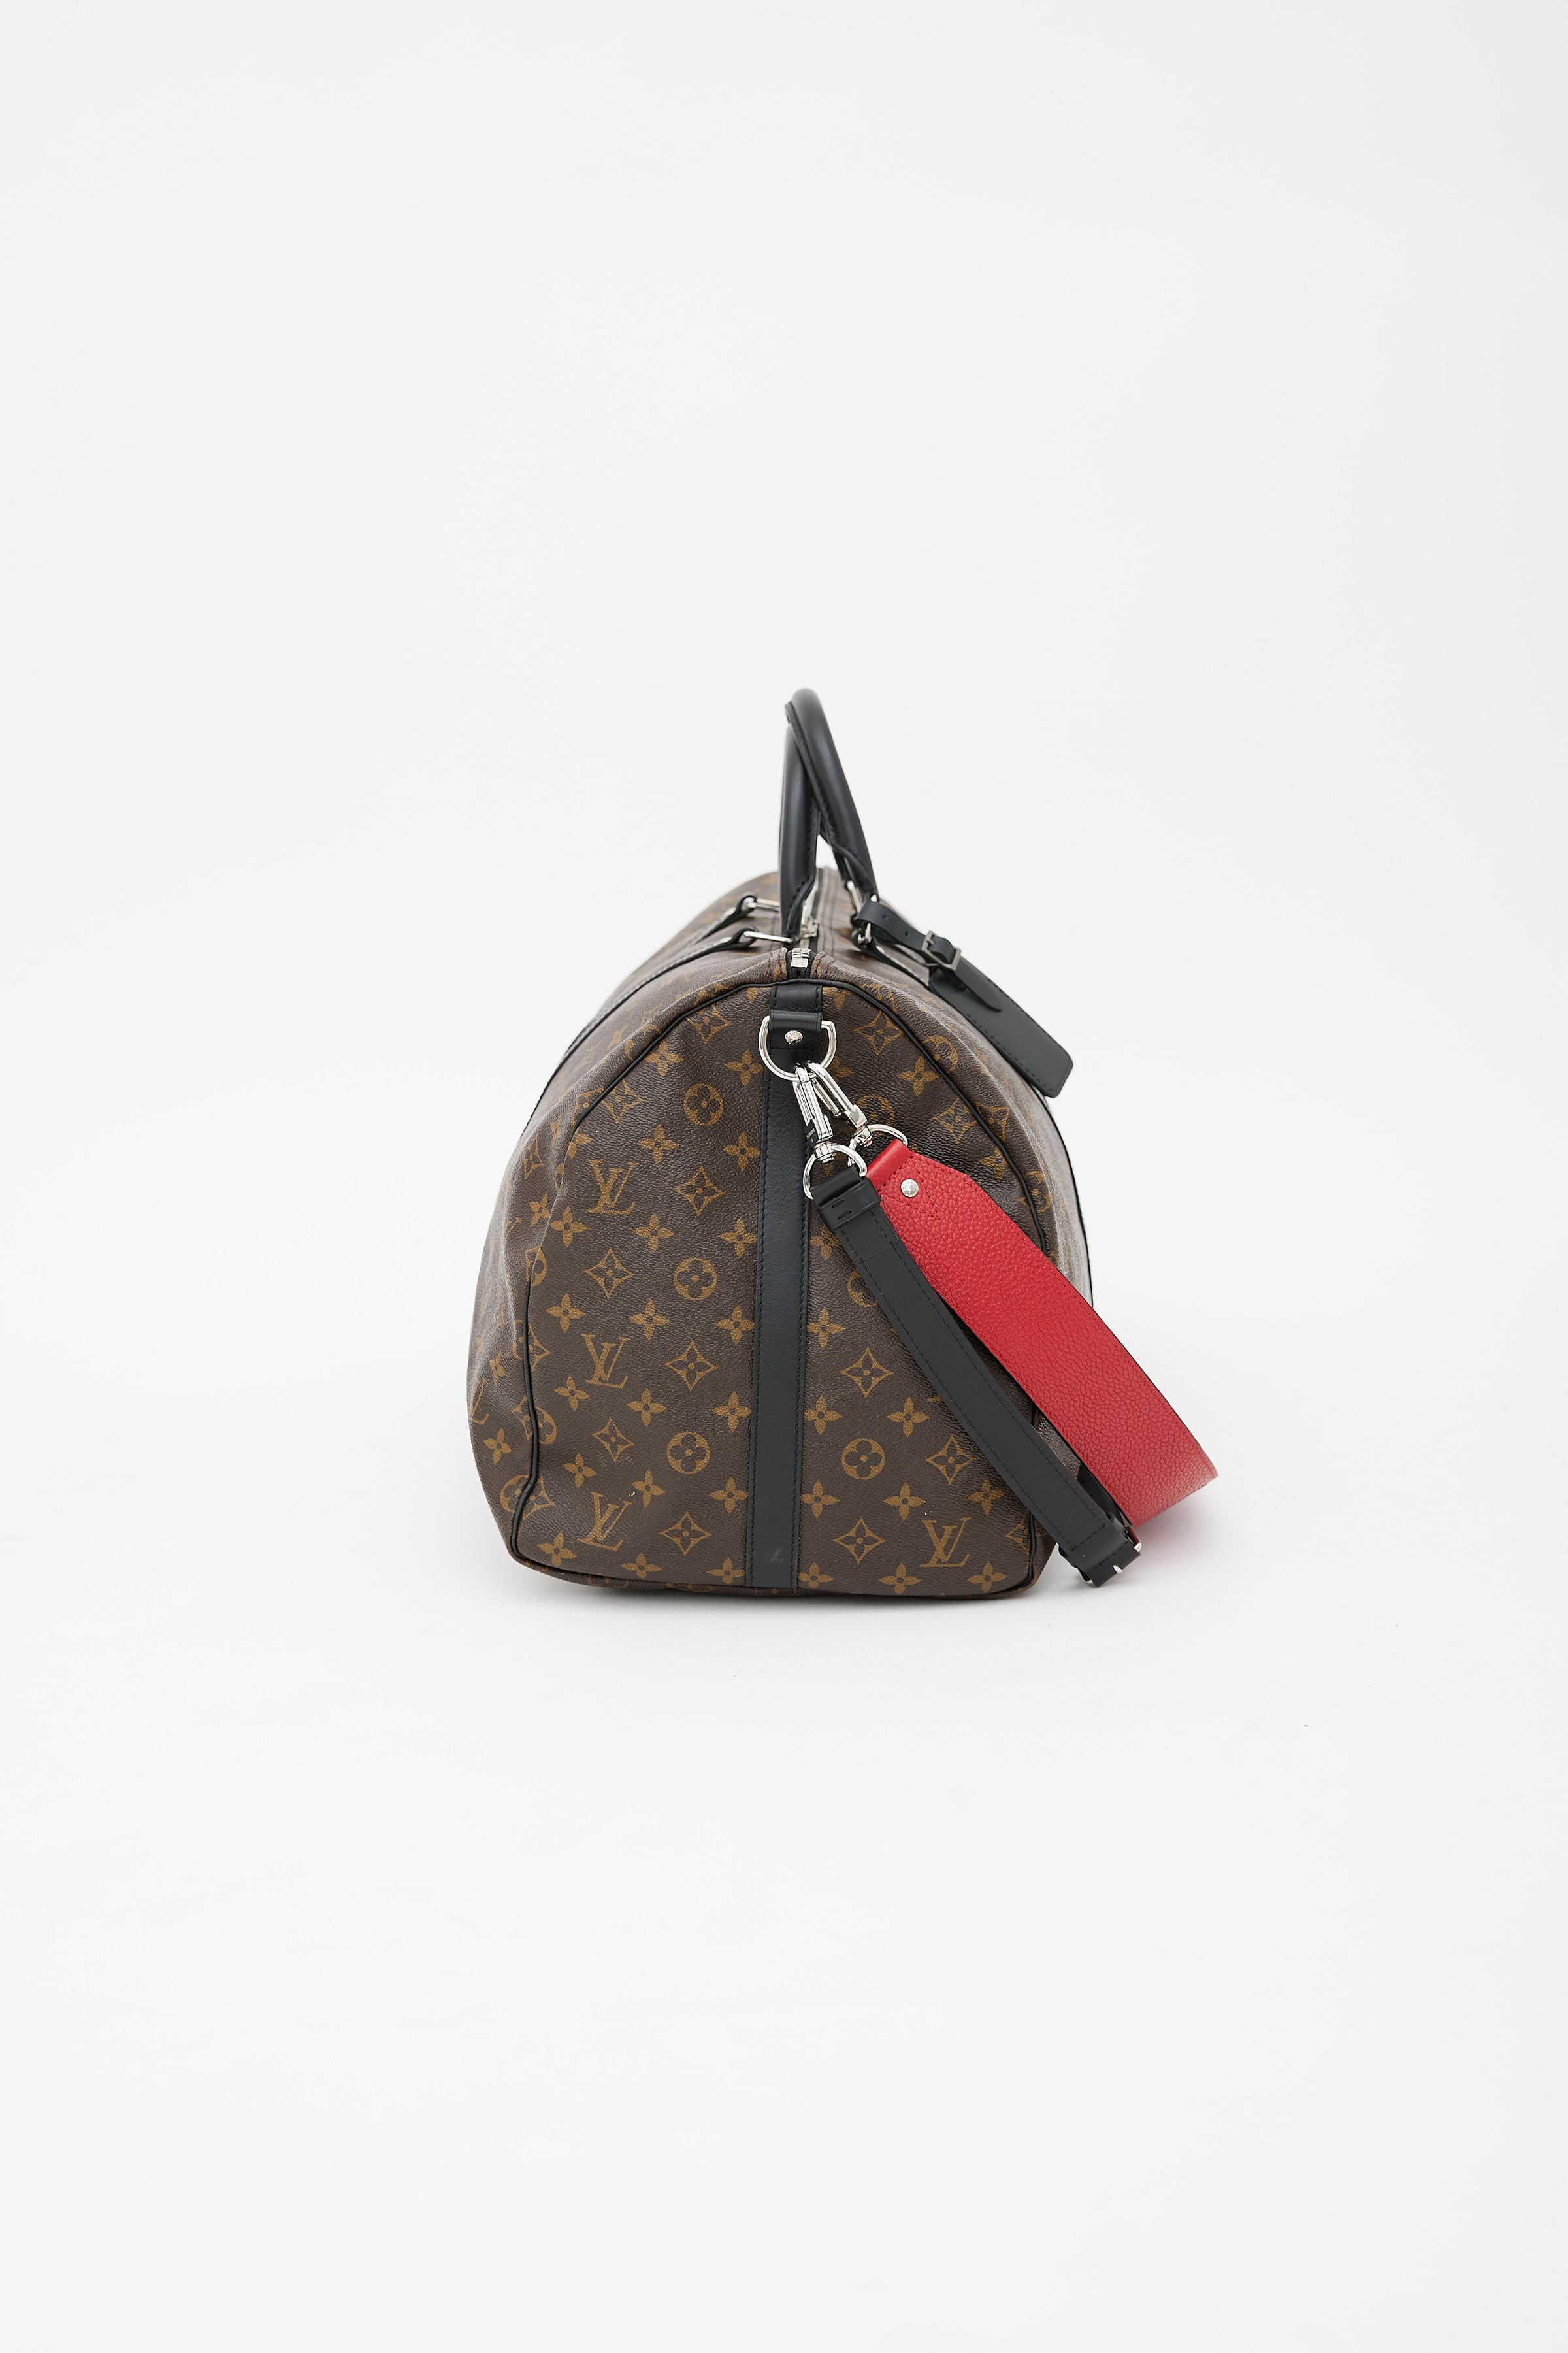 Louis Vuitton - Keepall Bandoulière 45 - Black - Monogram Leather - Men - Travel Bag - Luxury